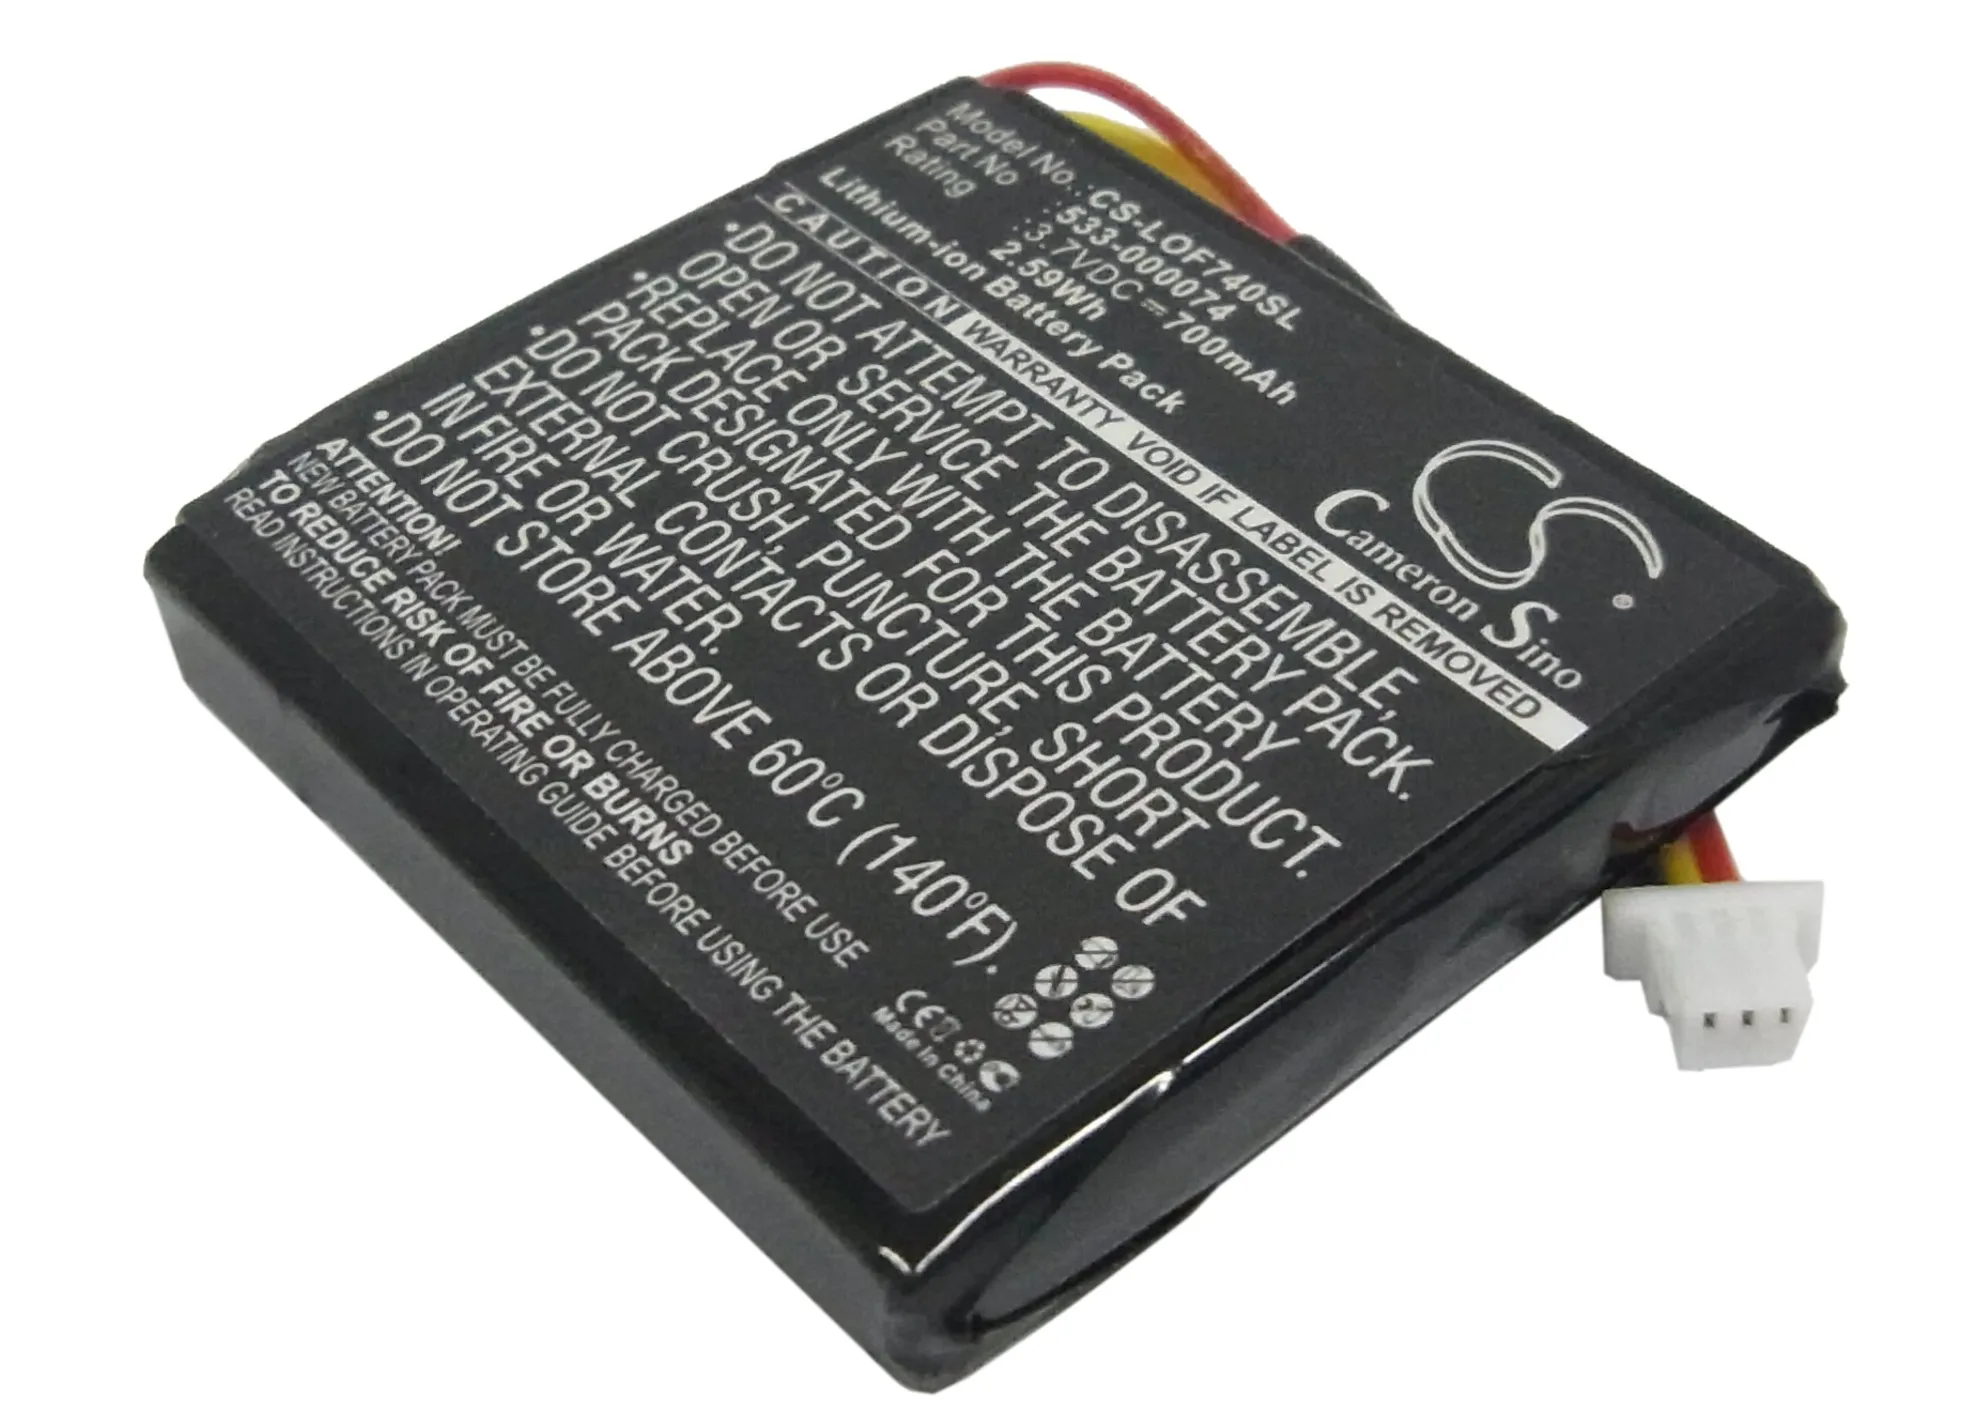 

Аккумулятор для беспроводной гарнитуры CS для Logitech G930 F540 981-000257 подходит для литий-ионных 533-000074 в 3,70 мАч/700 Вт-ч